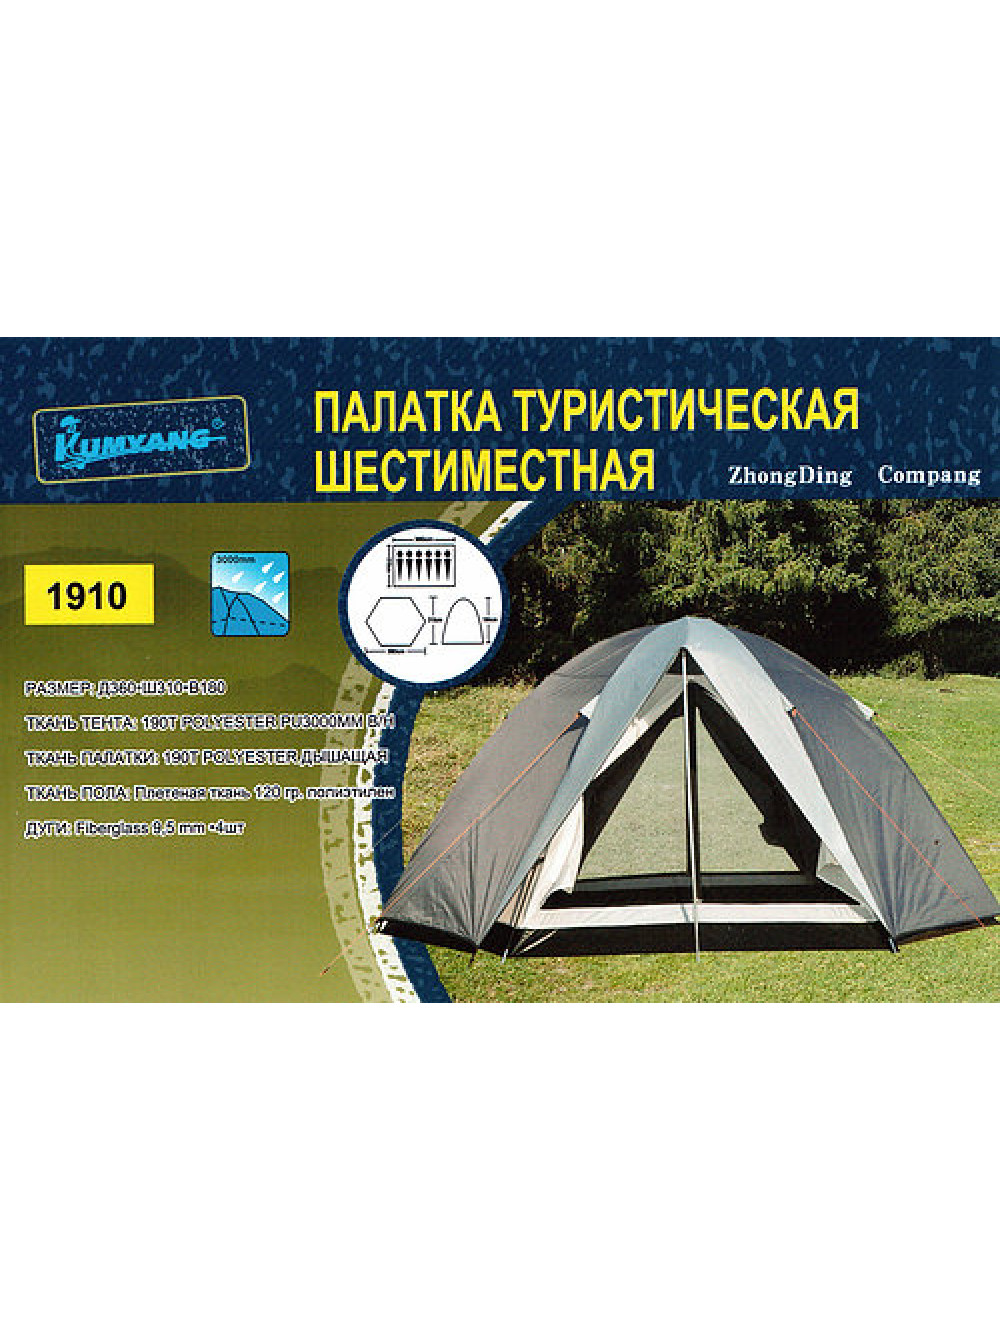 Палатка туристическая 6-ти местная LANYU 1910 оптом